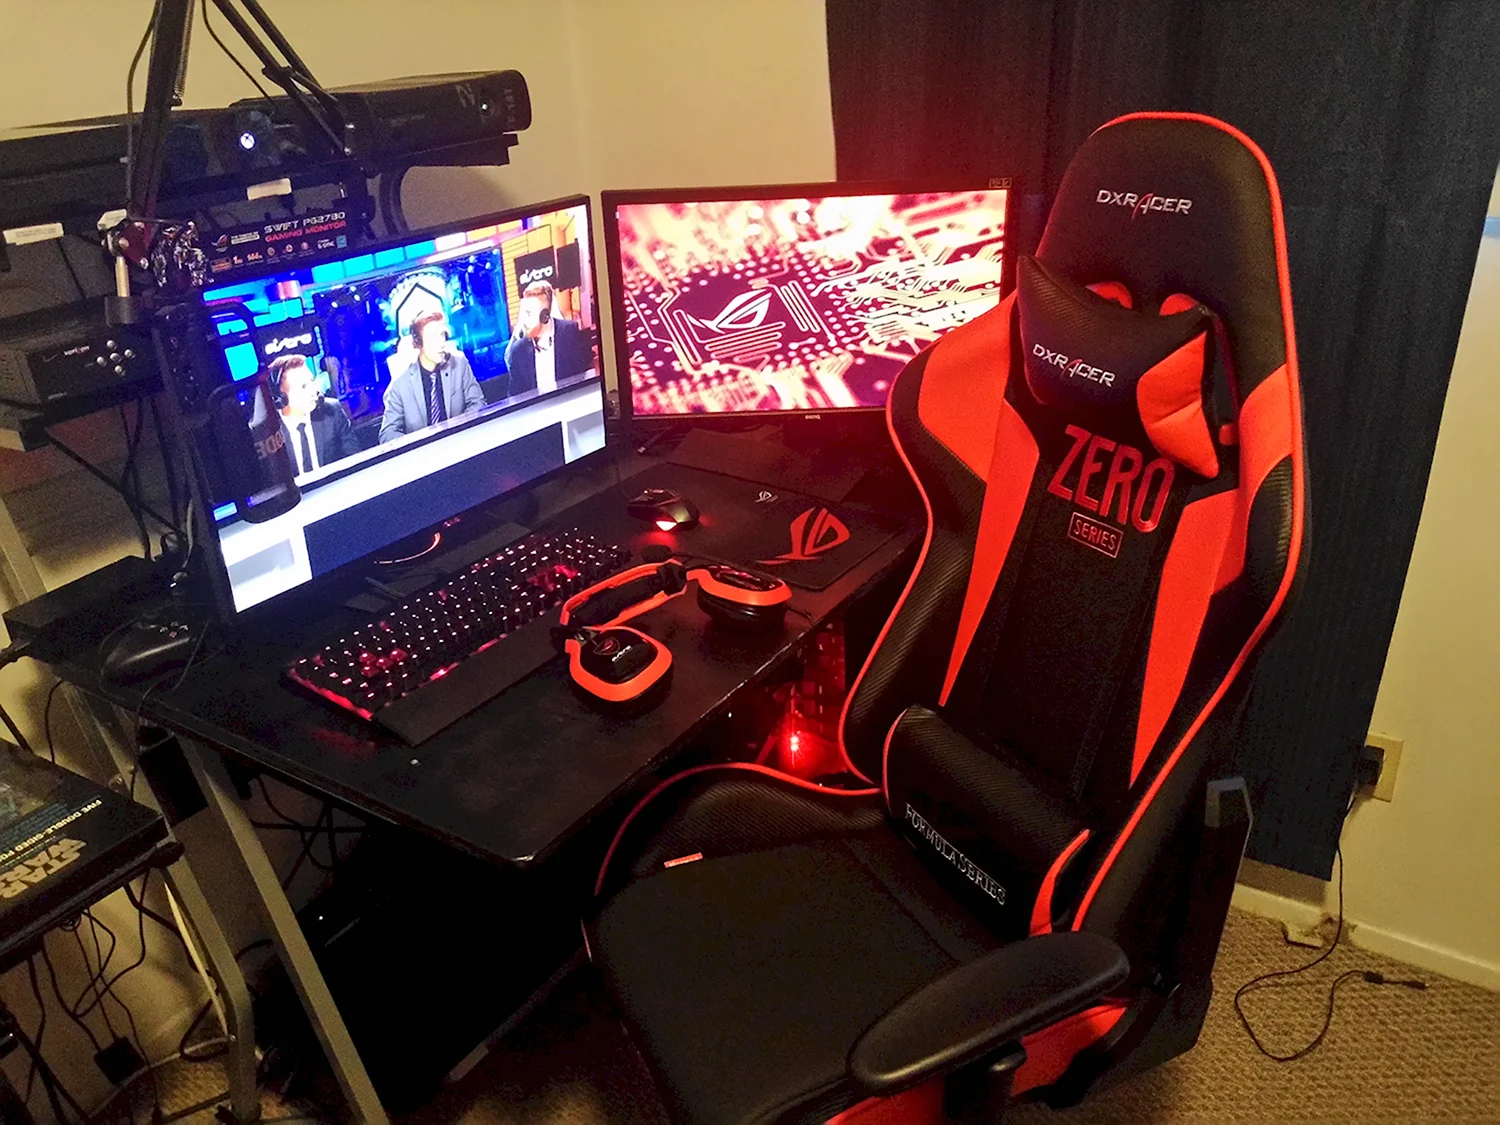 Геймерское кресло Gamer Red